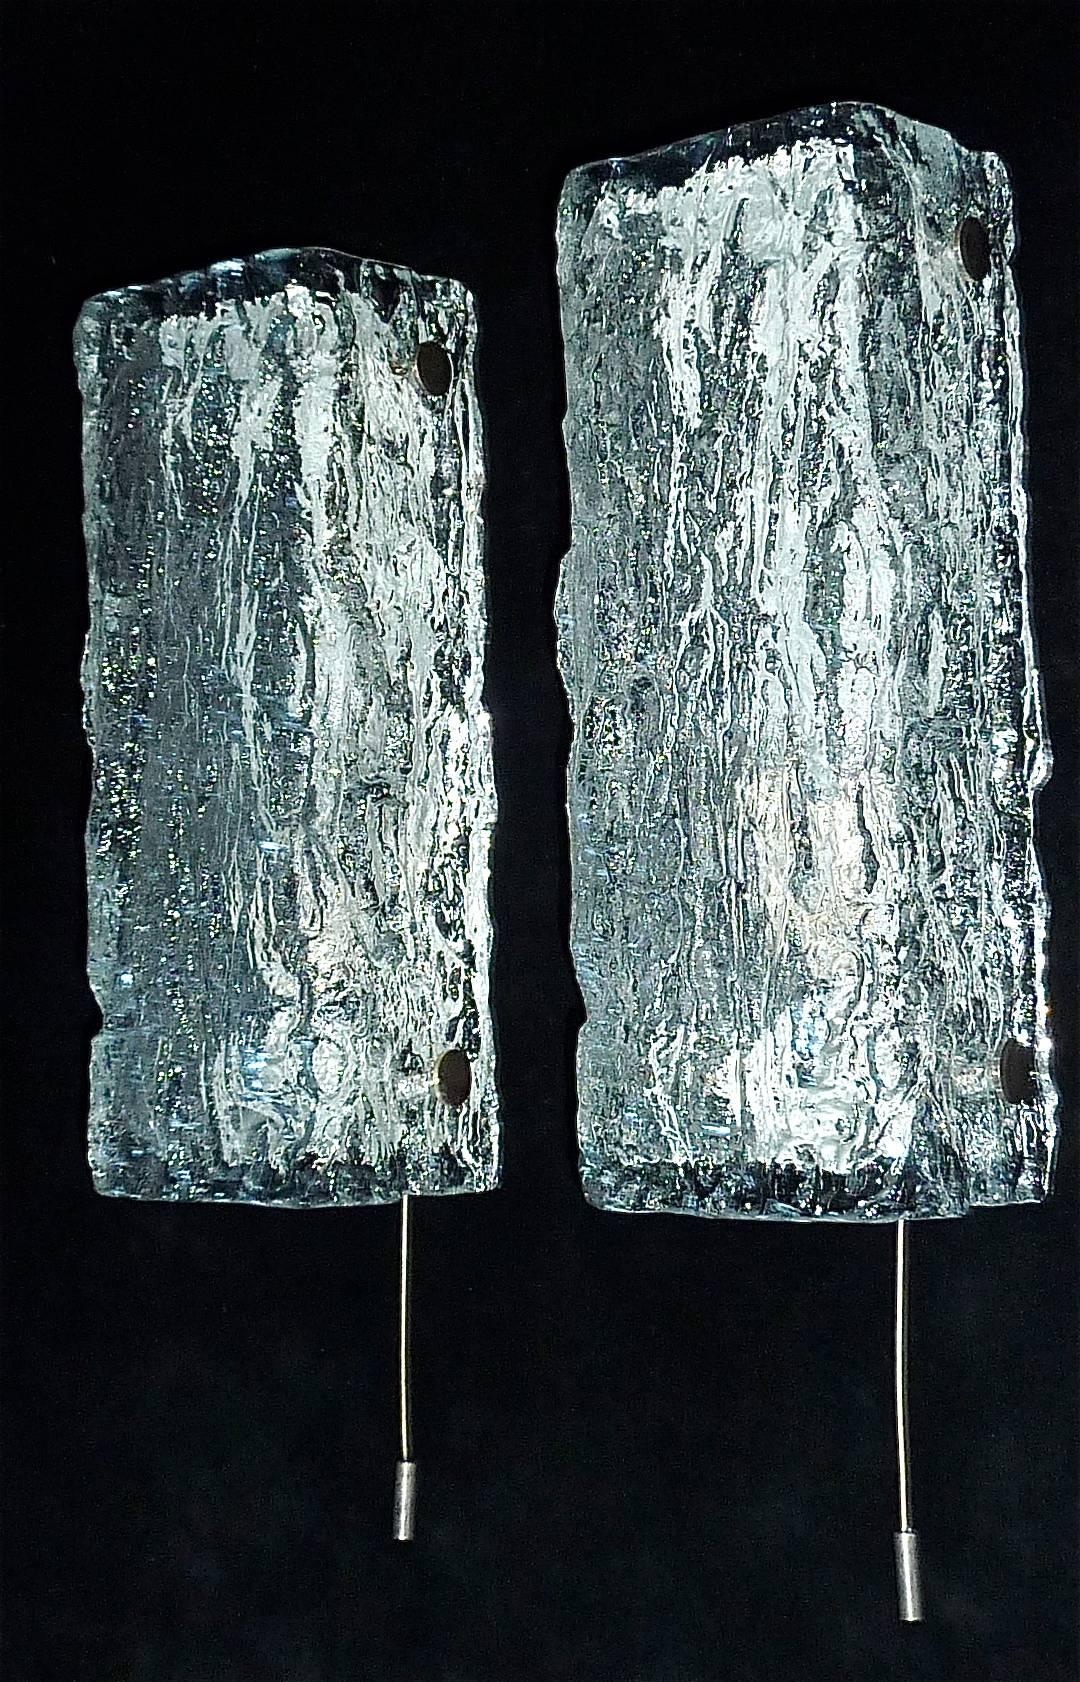 Modernistische Kaiser-Wandleuchten, Murano-Eisglas, Silber, Weiß, Metall, 60er Jahre, Paar (Moderne der Mitte des Jahrhunderts)